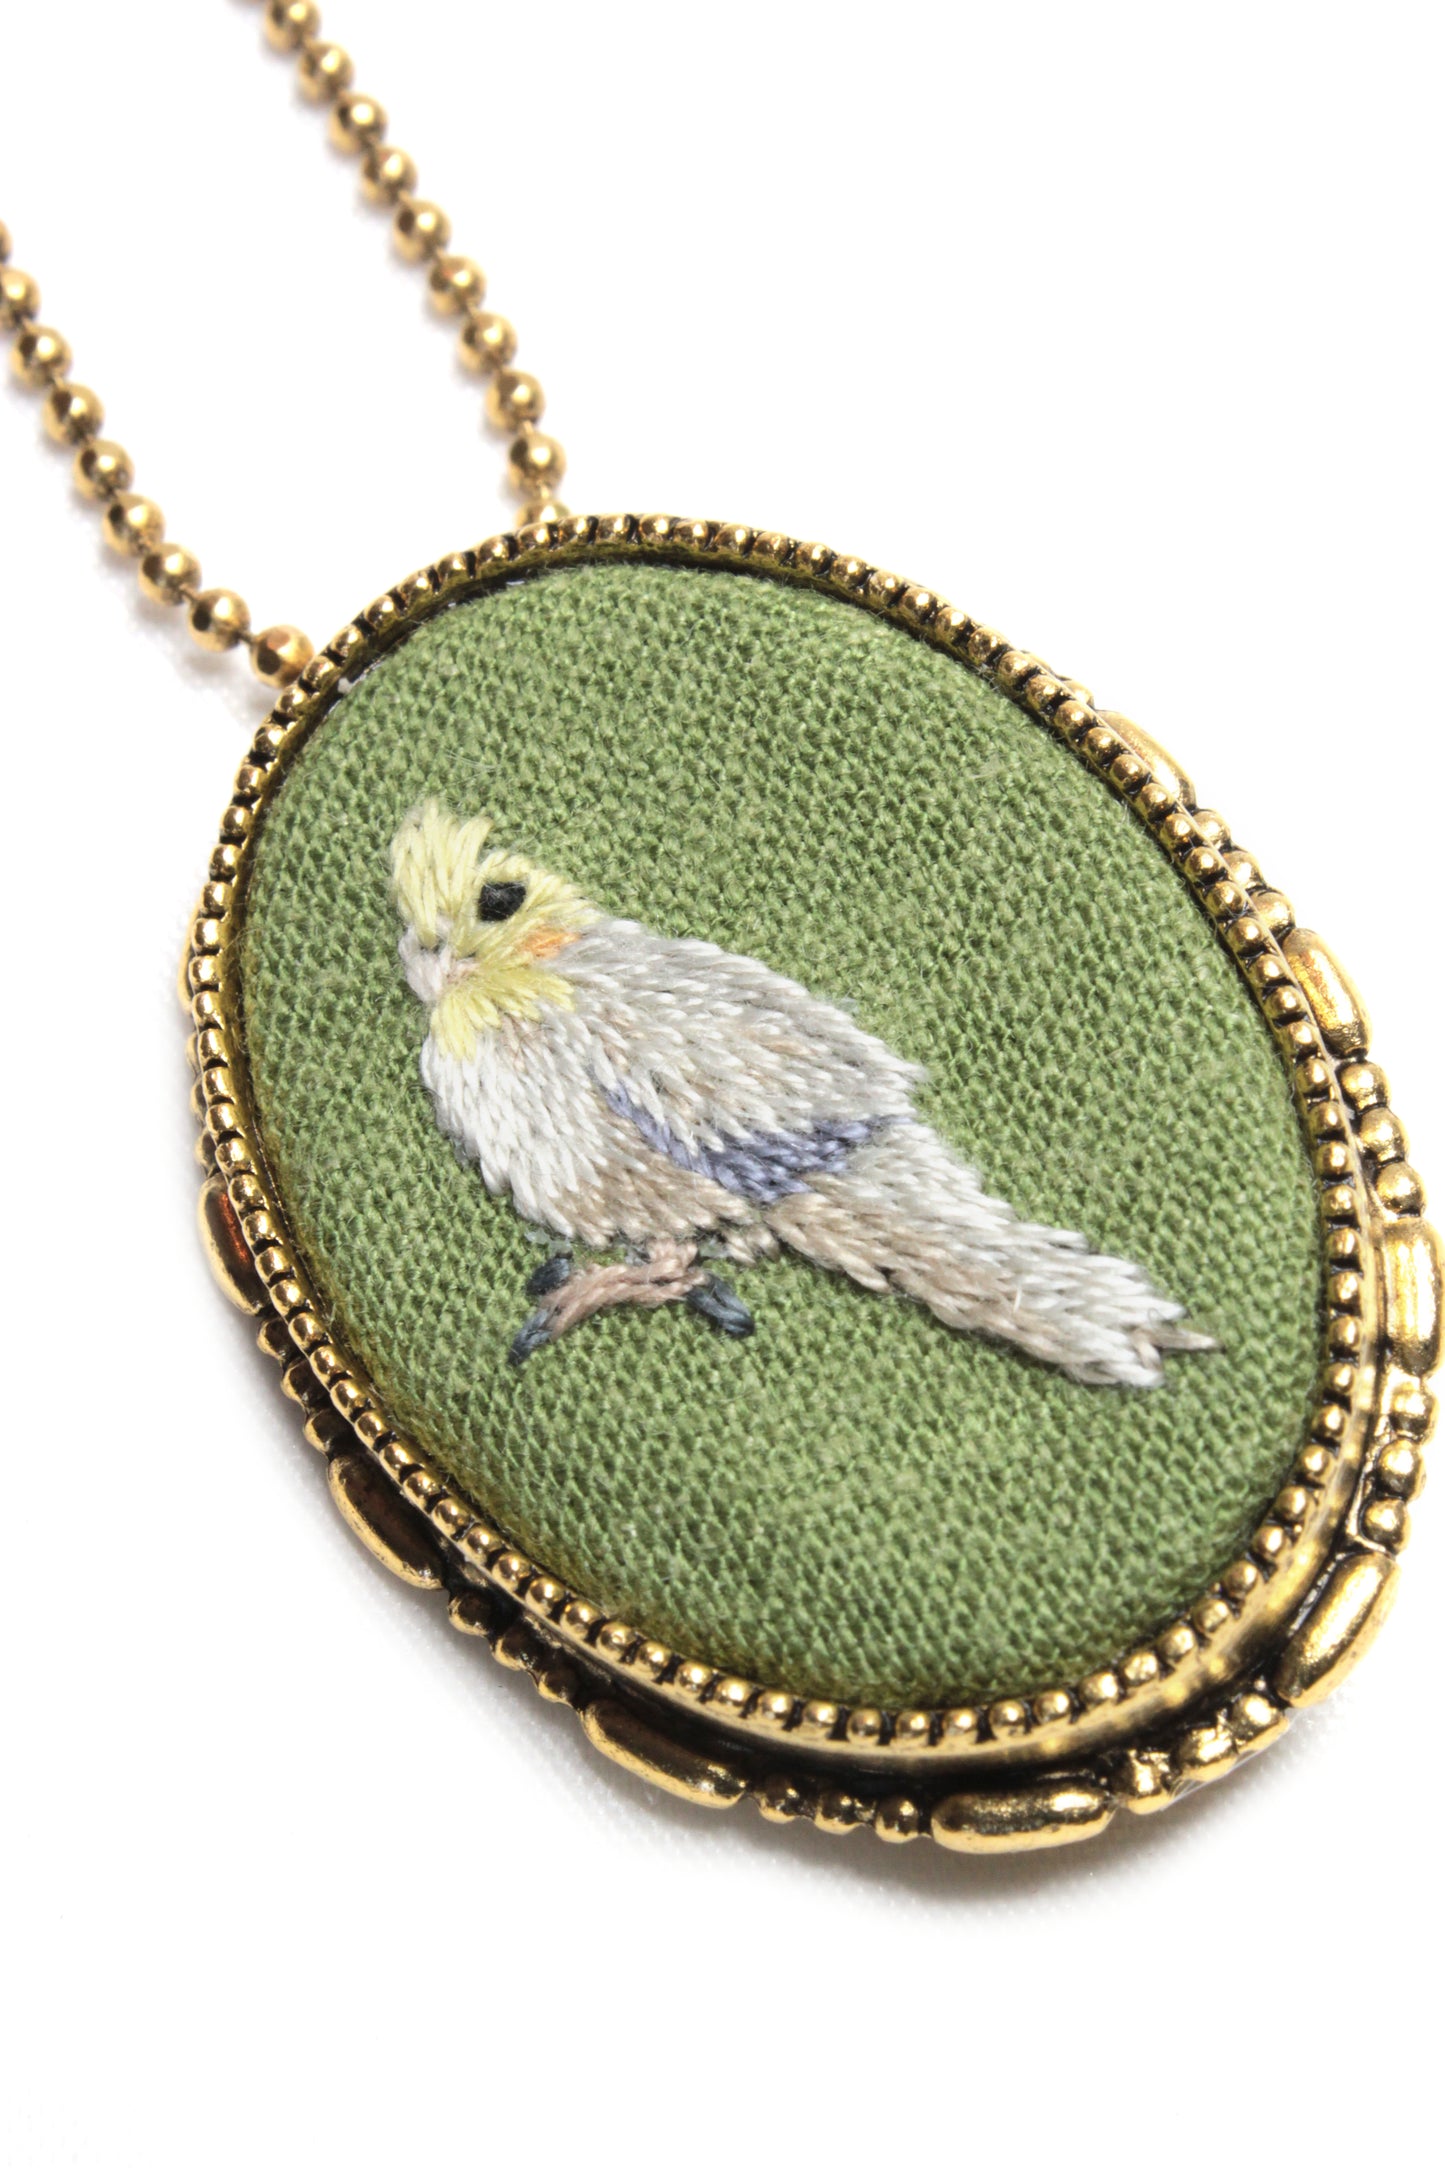 Embroidery Cockatiel Necklace/Brooch